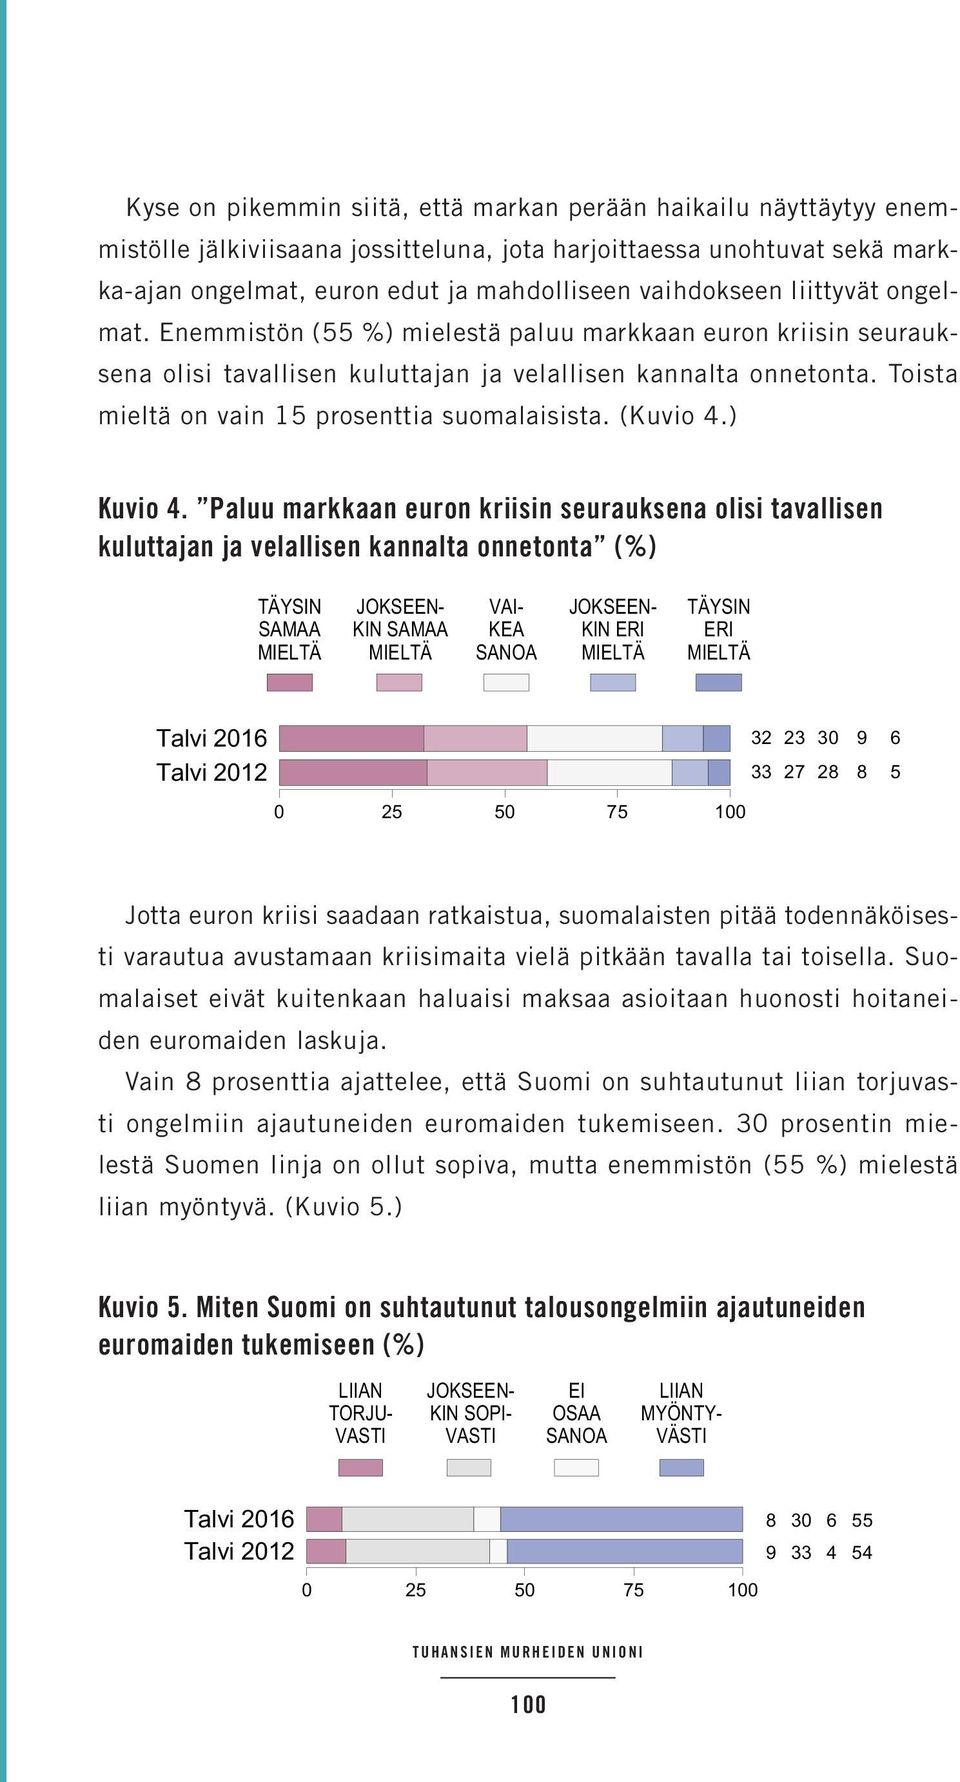 Toista mieltä on vain 15 prosenttia suomalaisista. (Kuvio 4.) 2 ) 7 7 ) 4 ) ) - 7 4 4 115 1 5-7 4 ) 7 5 - ) 15 1 6 ) 8 ) 15-7 7 6 6 ) ) ) 8 - ) 15 - ) ) 6 ) Kuvio 4.